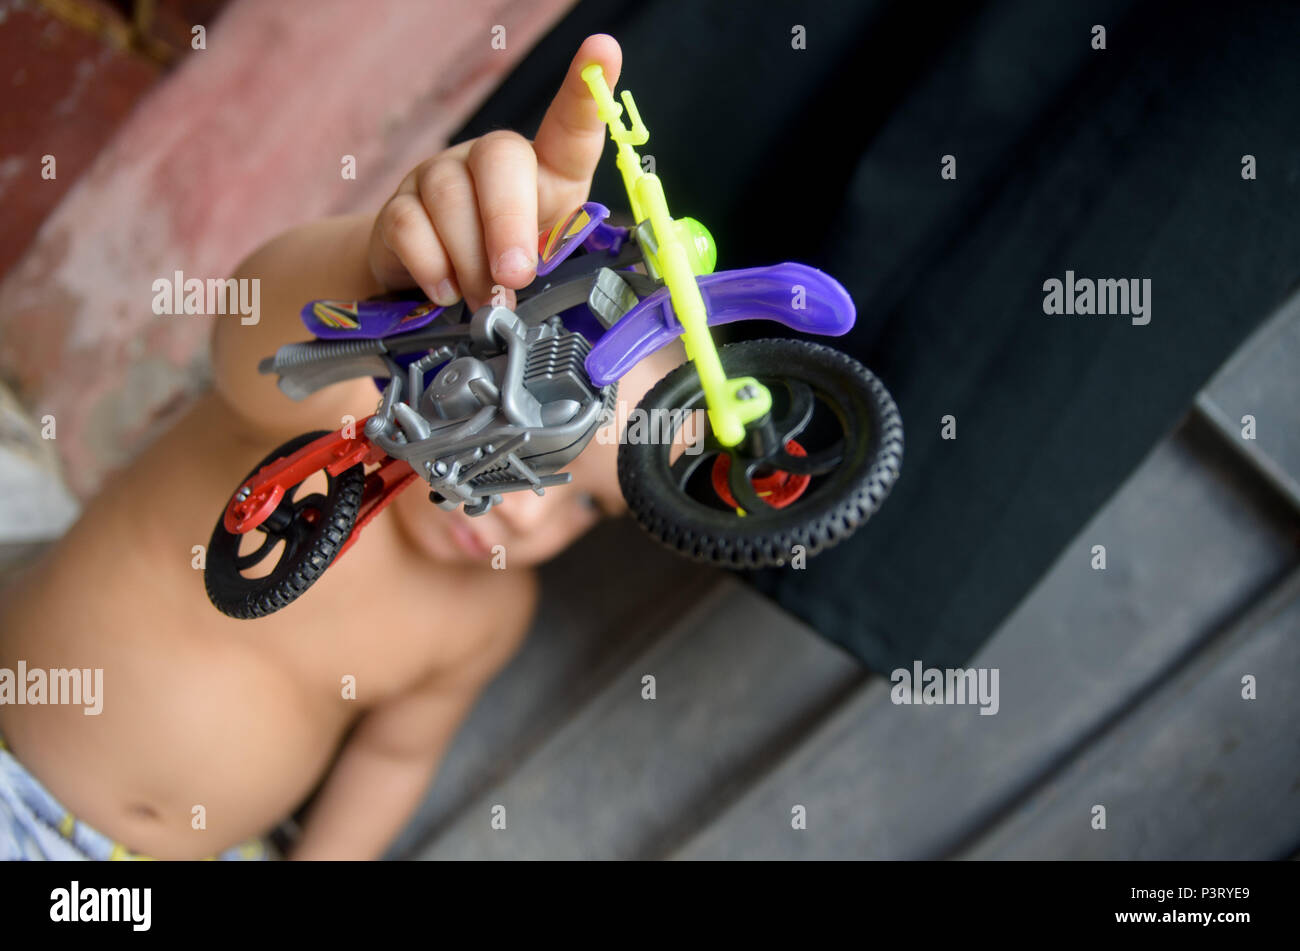 RECIFE, PE - 10.10.2015: FAVELA DO COQUE - Criança brinca com motocicleta de brinquedo, na comunidade carente do Coque, em Recife (PE). (Foto: Diego Herculano / Fotoarena) Stock Photo